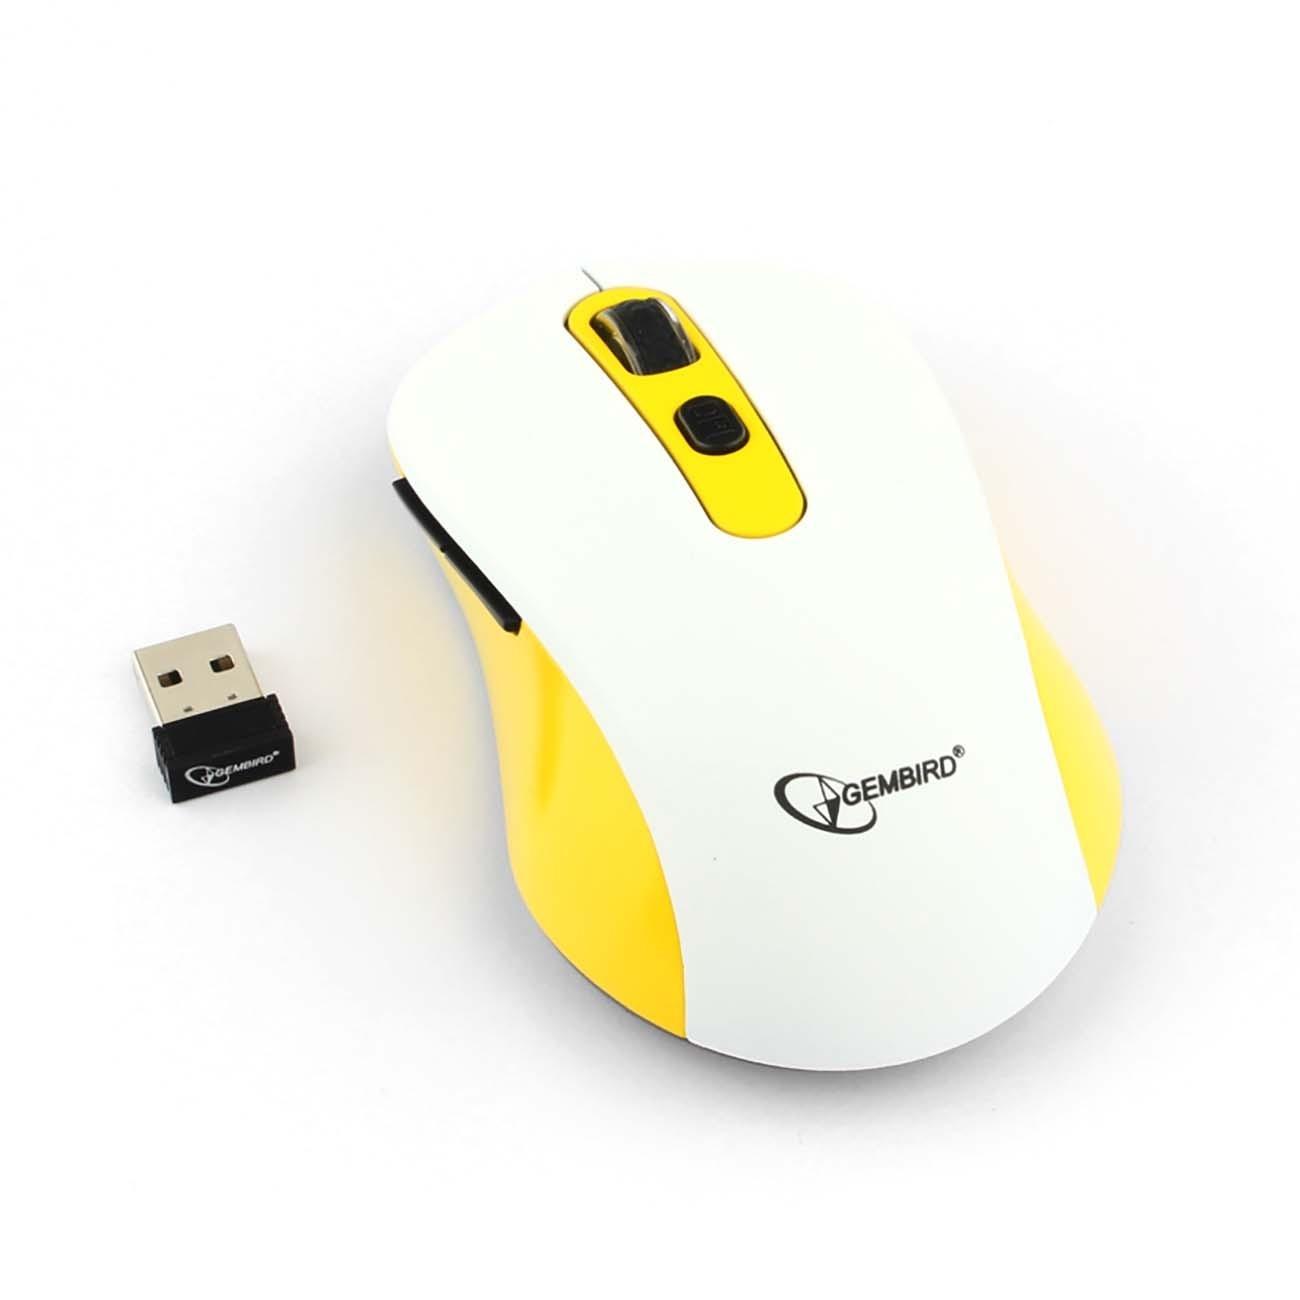 Gembird MUSW-221-Y {Мышь беспров., белый/жёлтый, 5кн.+колесо-кнопка, 800/1200/1600DPI, 2.4ГГц, трехуровневая система энергосбережения}